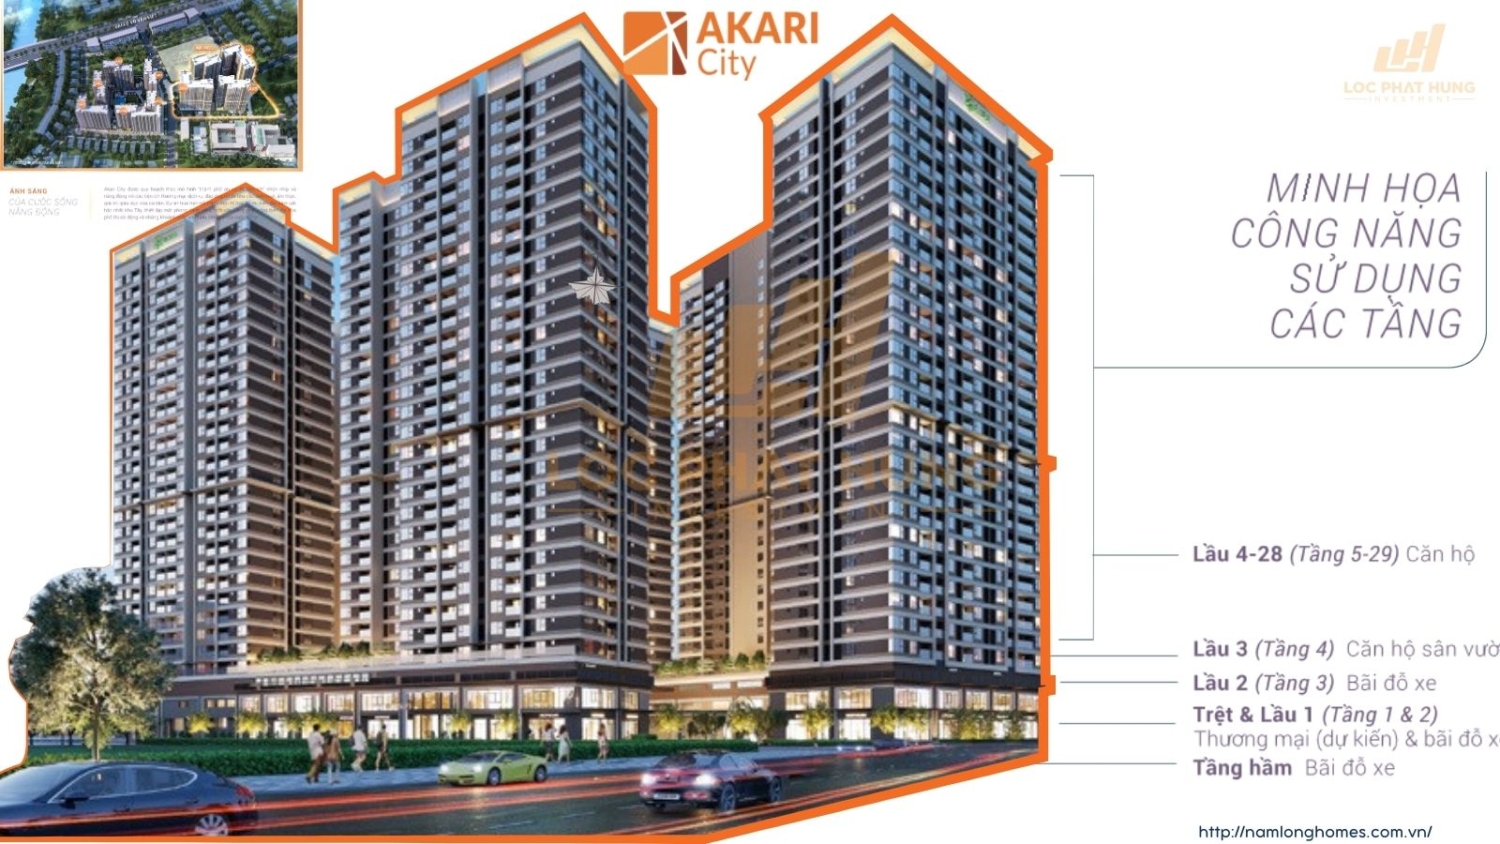 Bố trí các tầng căn hộ Akari City Bình Tân